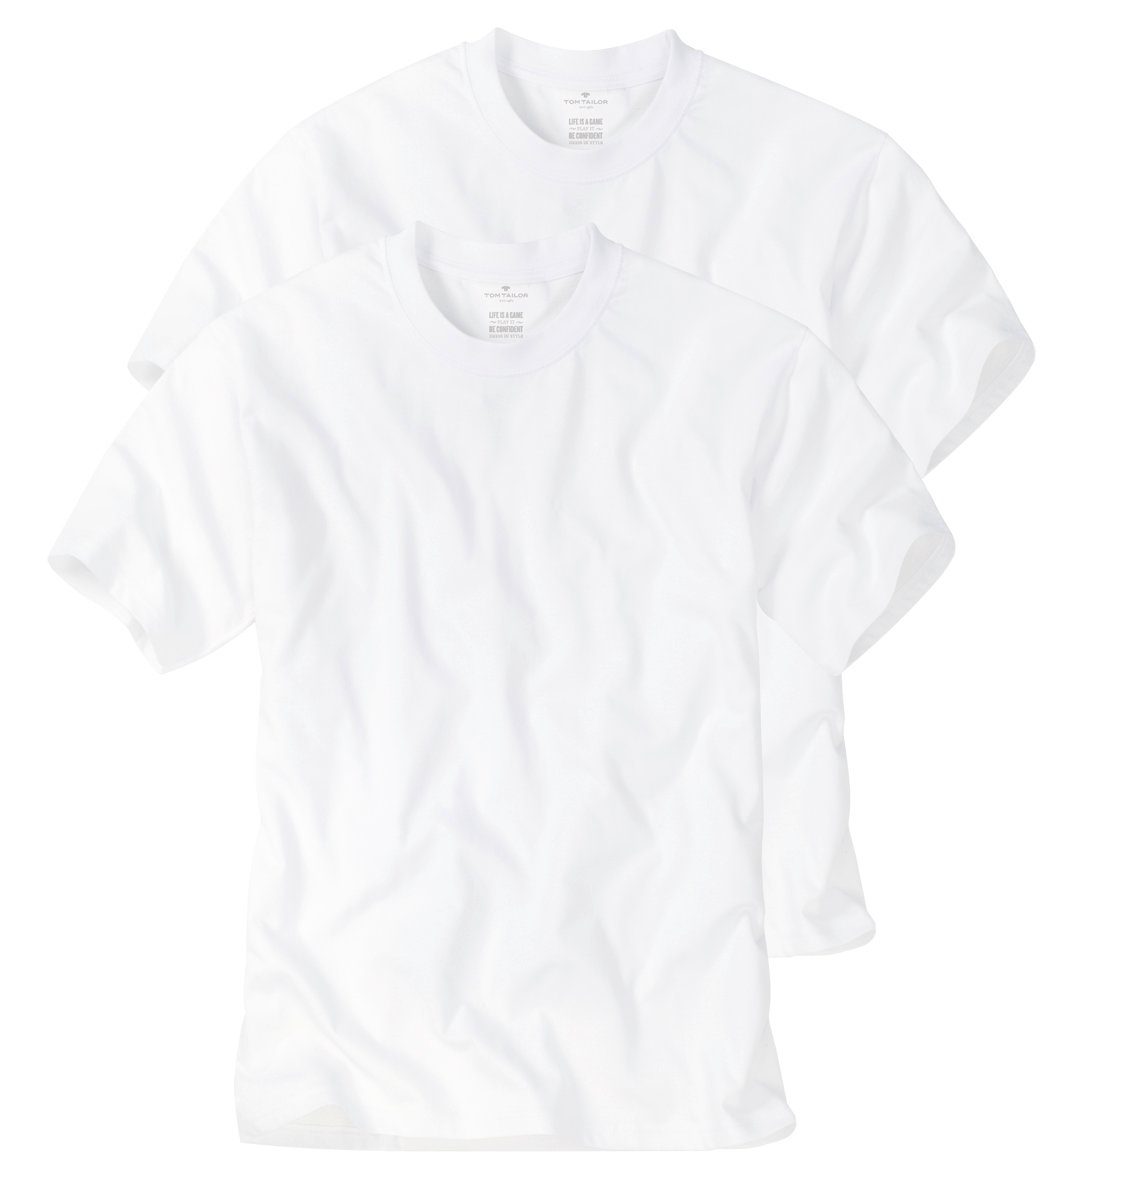 Drunter mit - (4-tlg., 4er-Pack) TOM Shirts Herren TAILOR geschnitten, bequem T-Shirt für Multipack und Drüber Rundhals-Ausschnitt